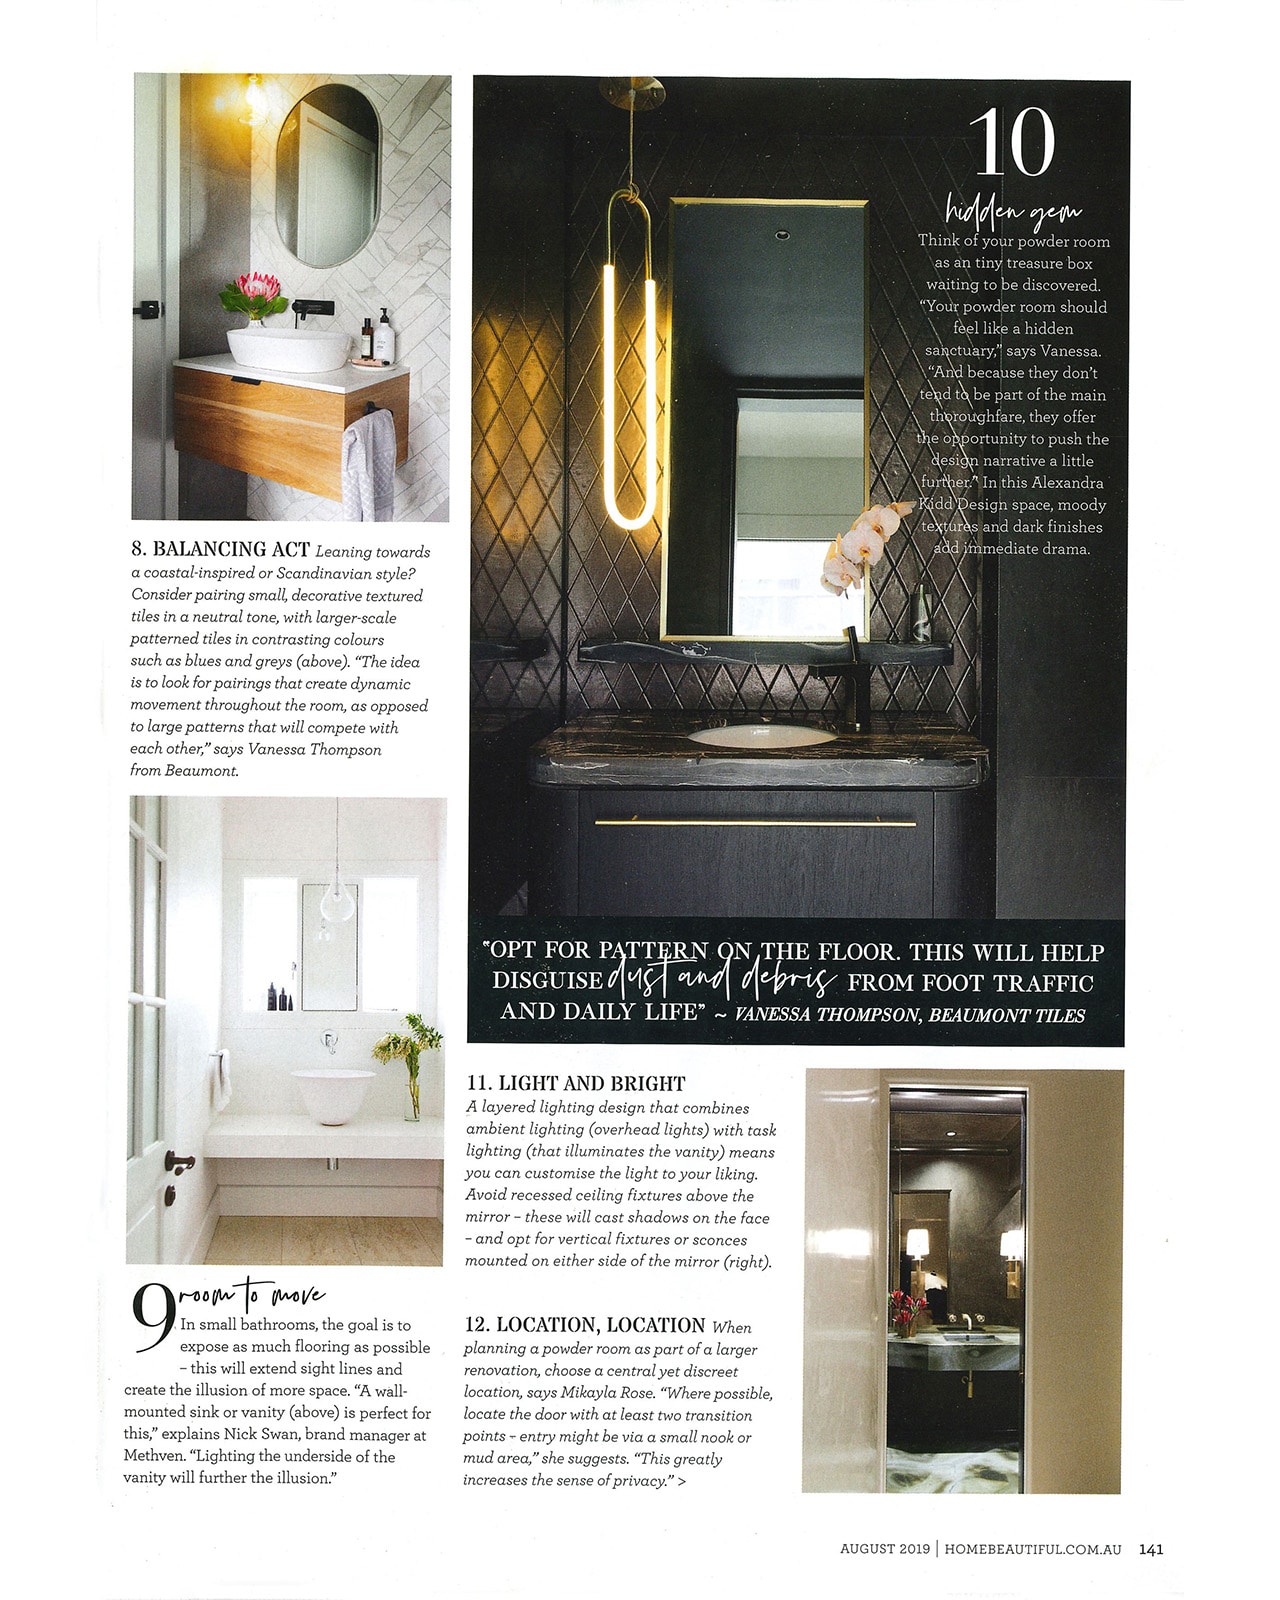 Studio Black Interiors featured in Home Beautiful Magazine.